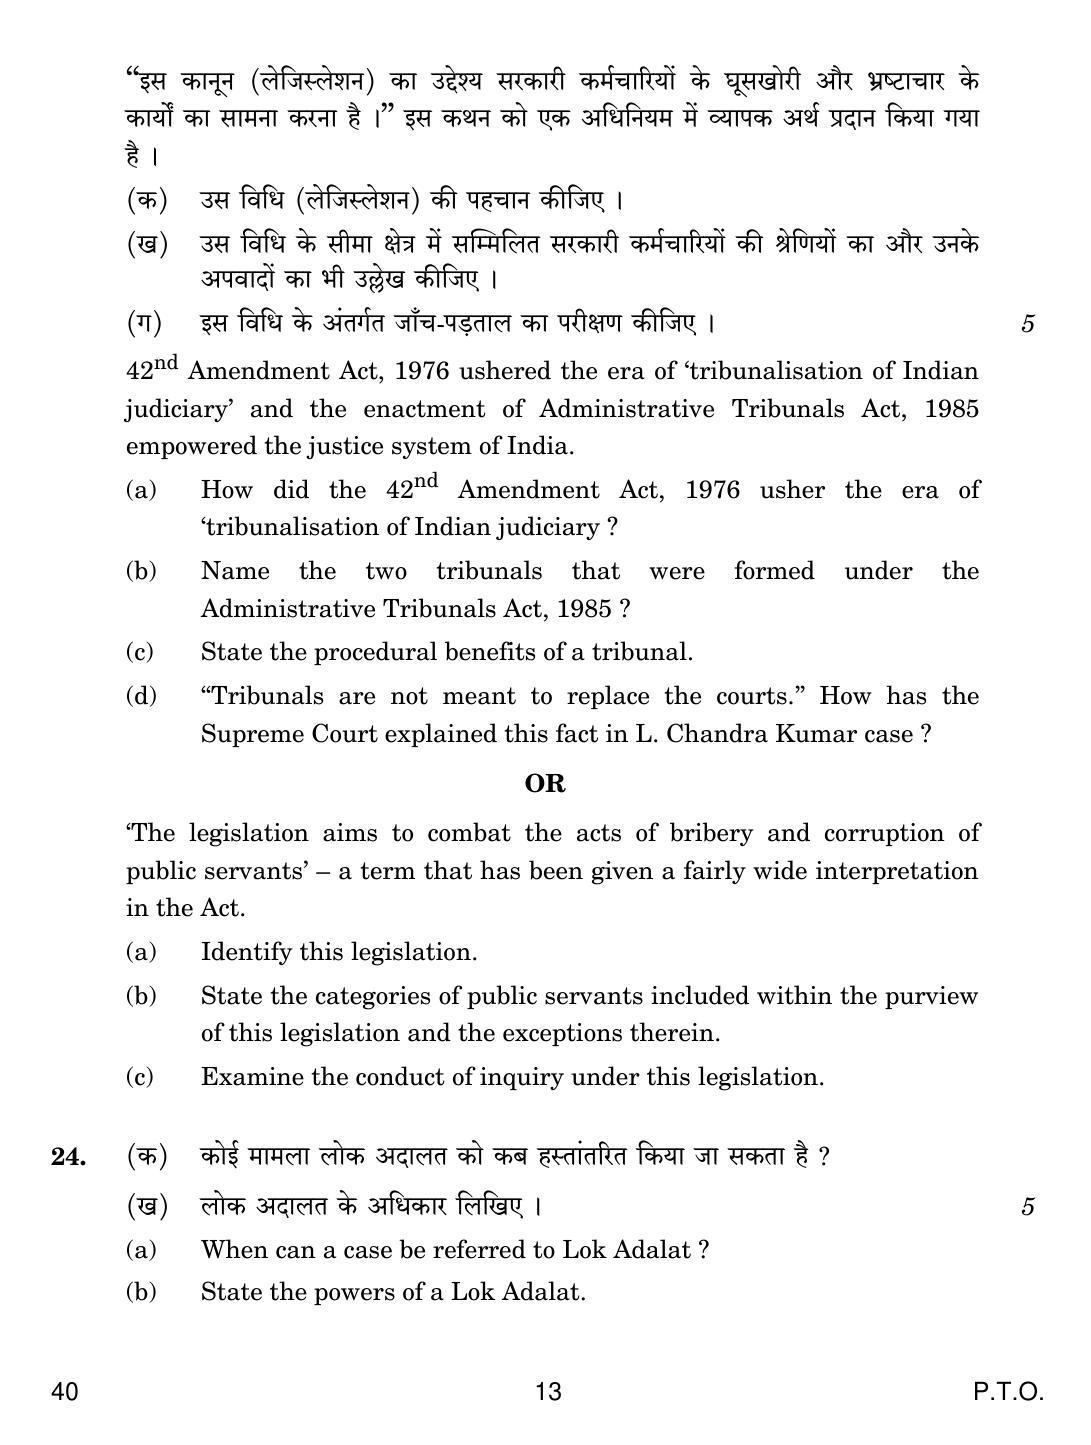 CBSE Class 12 40 Legal Studies 2019 Question Paper - Page 13